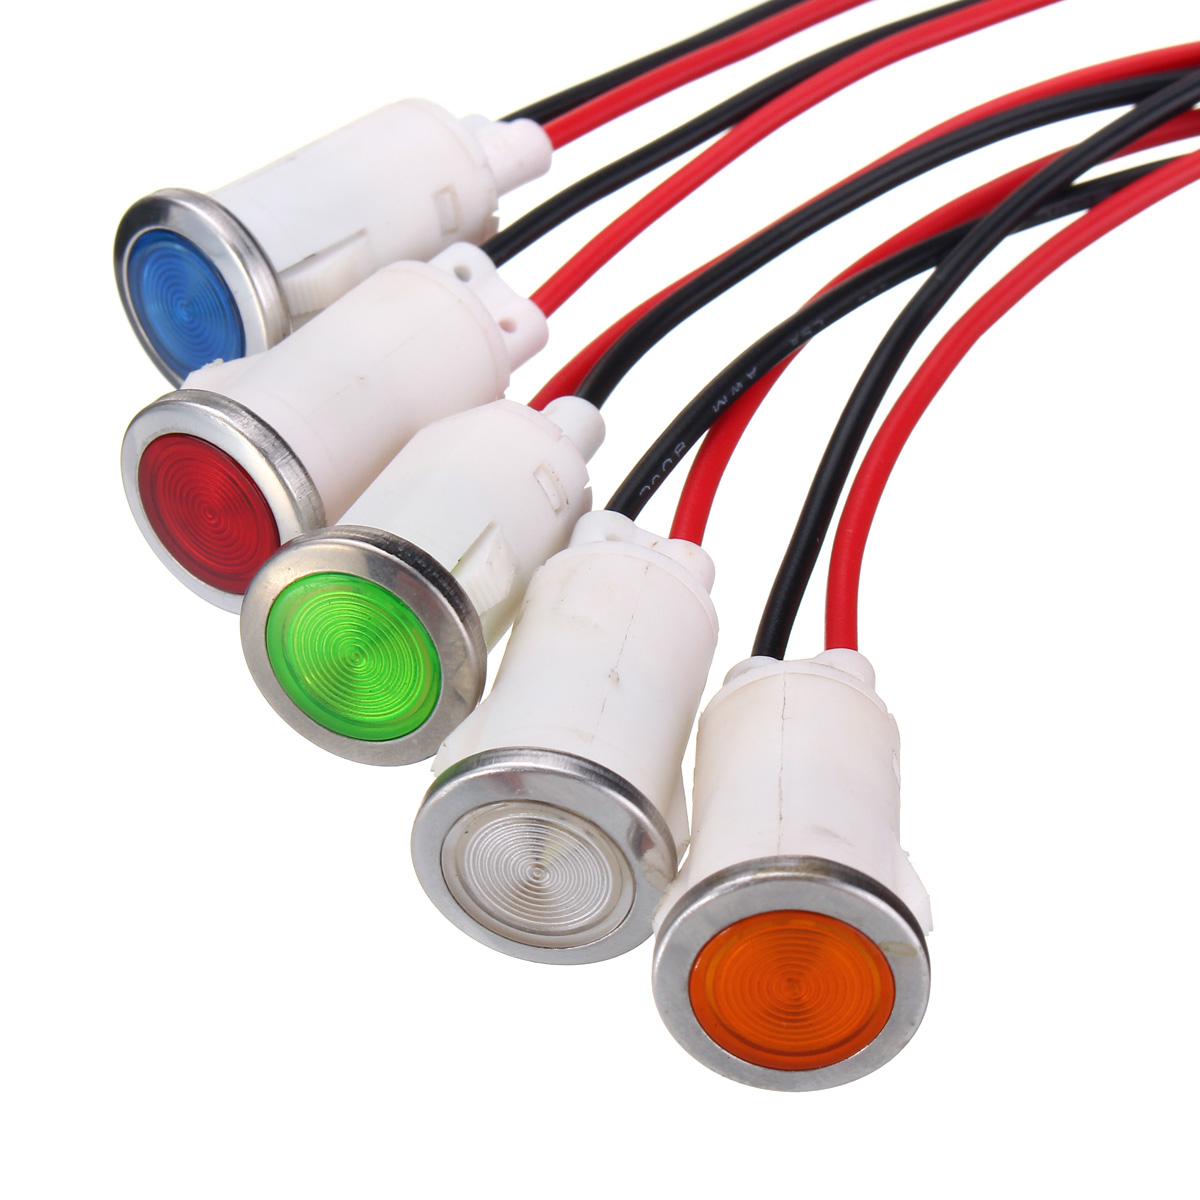 

12V 12.5mm LED Indicator Pilot Dash Dashboard Panel Warning Light Lamp 5 color